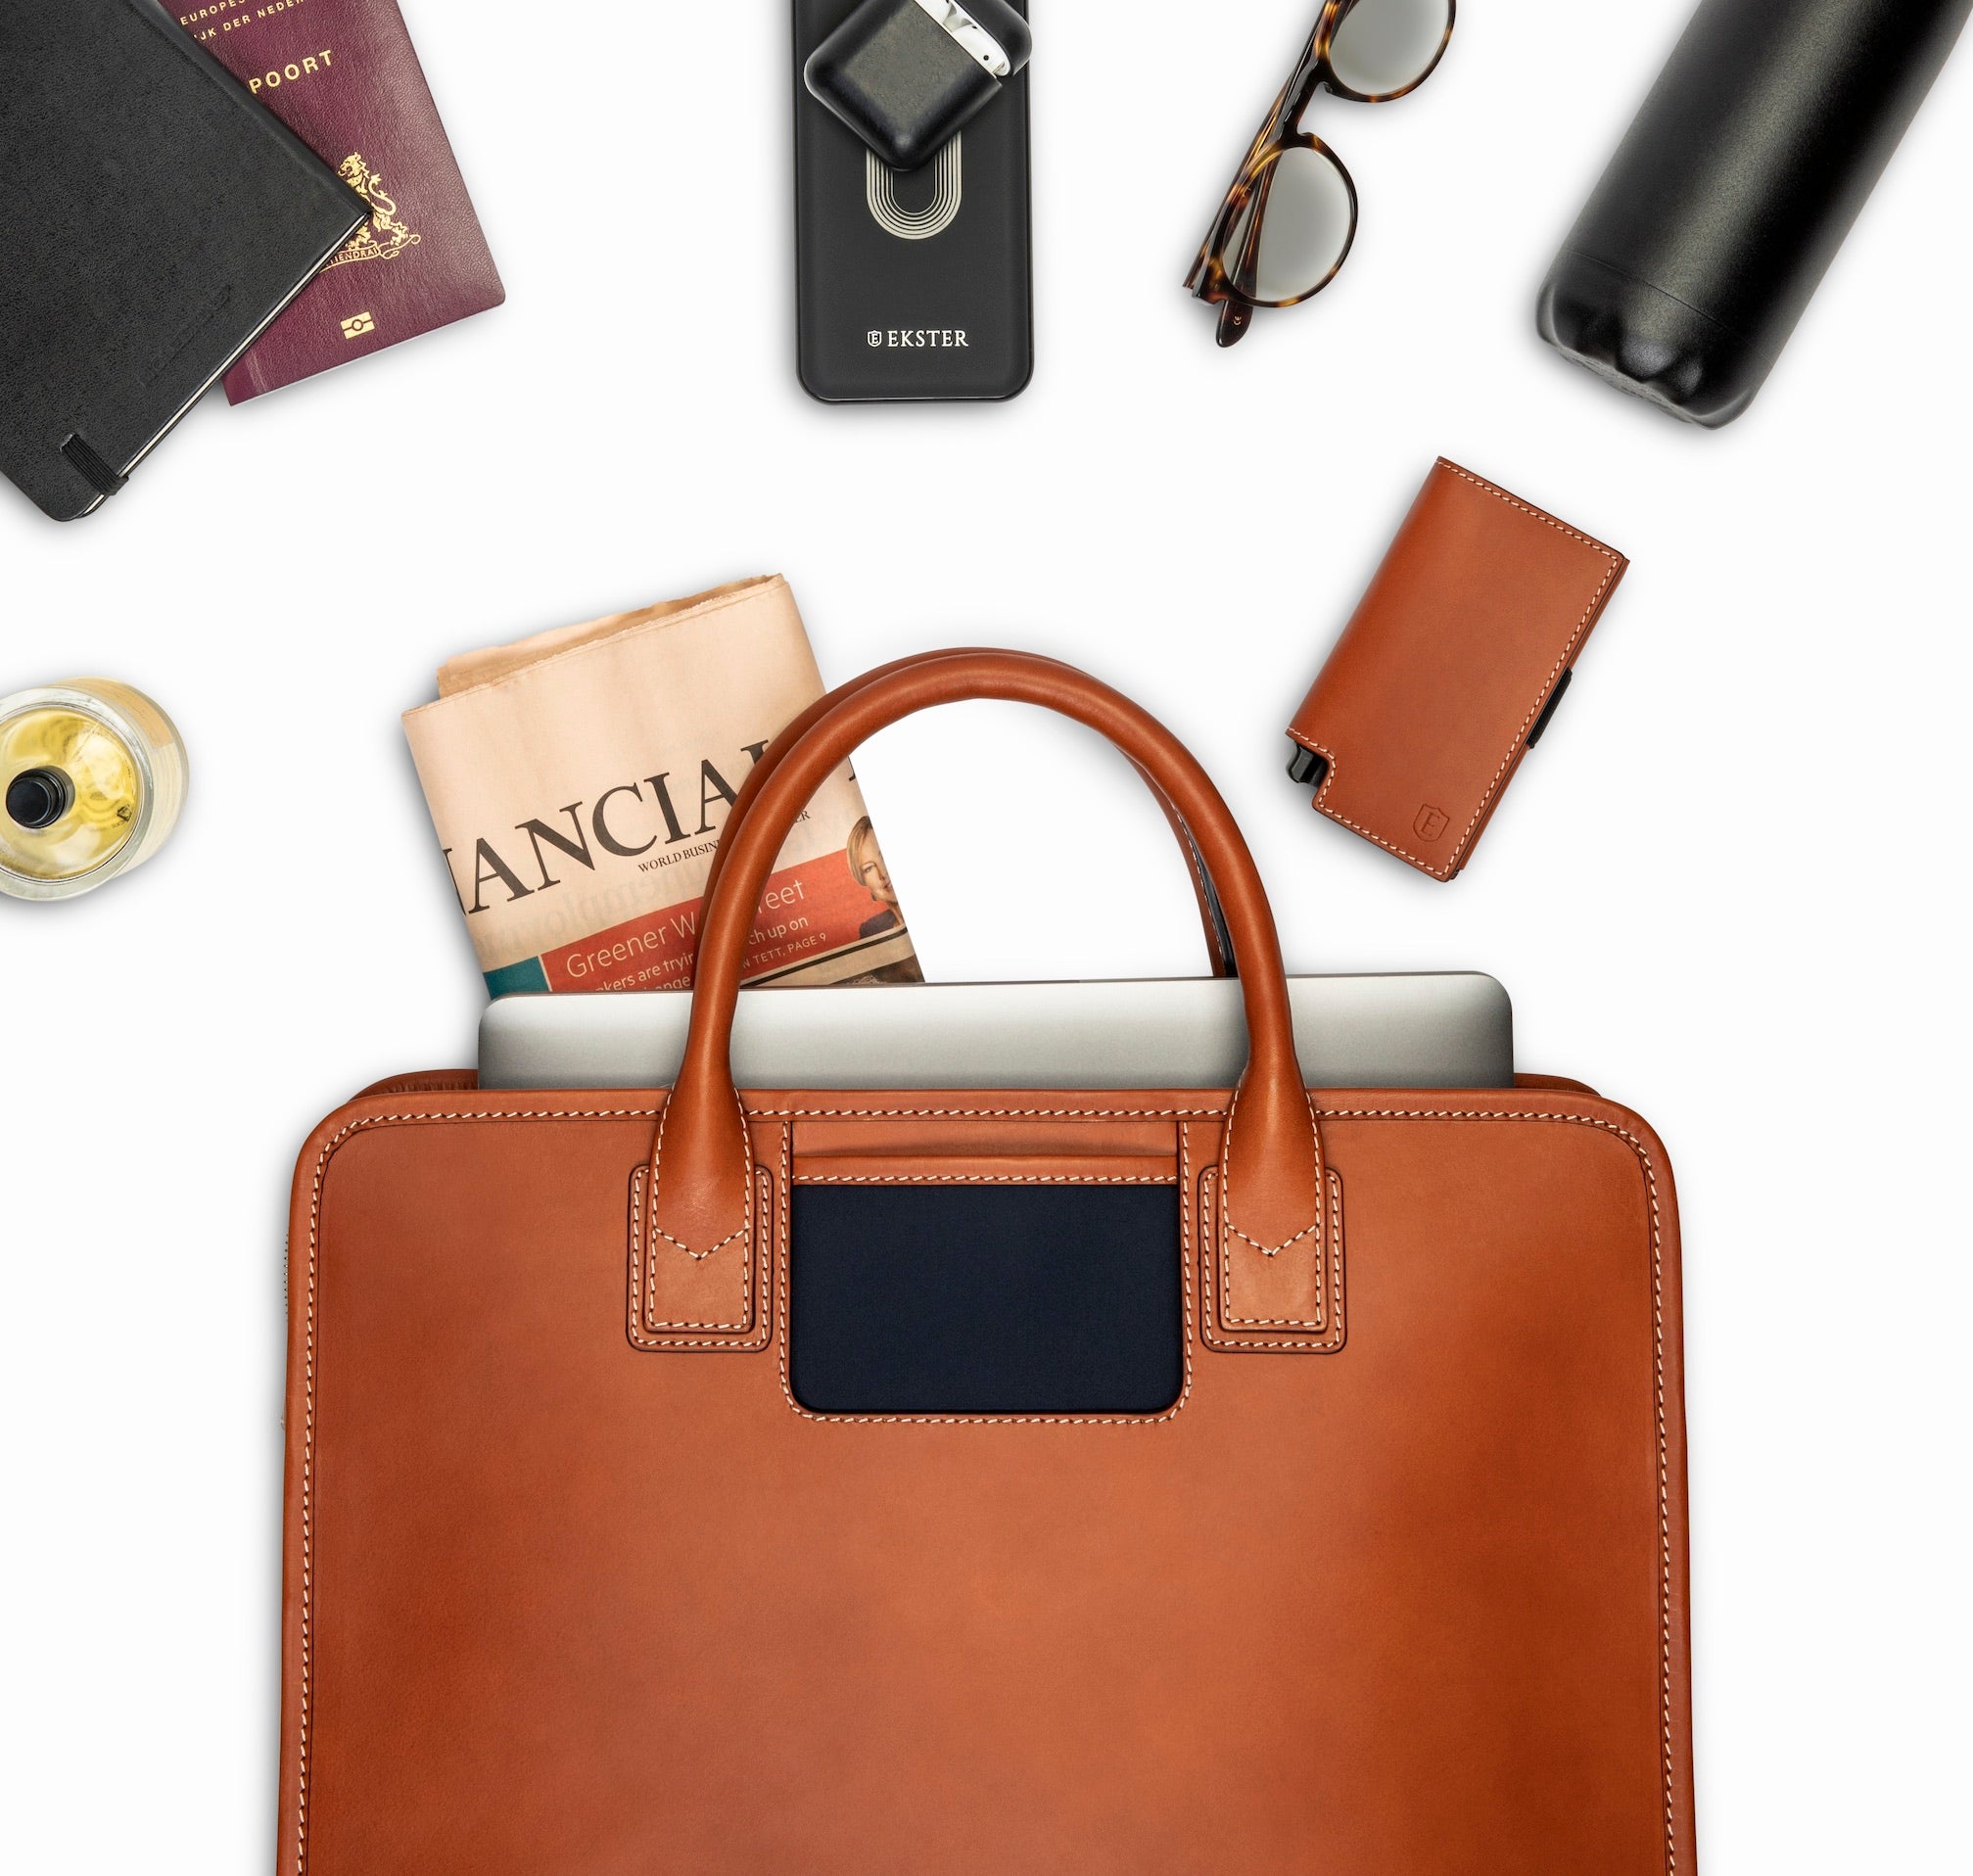 Travelteq returns as smart bag